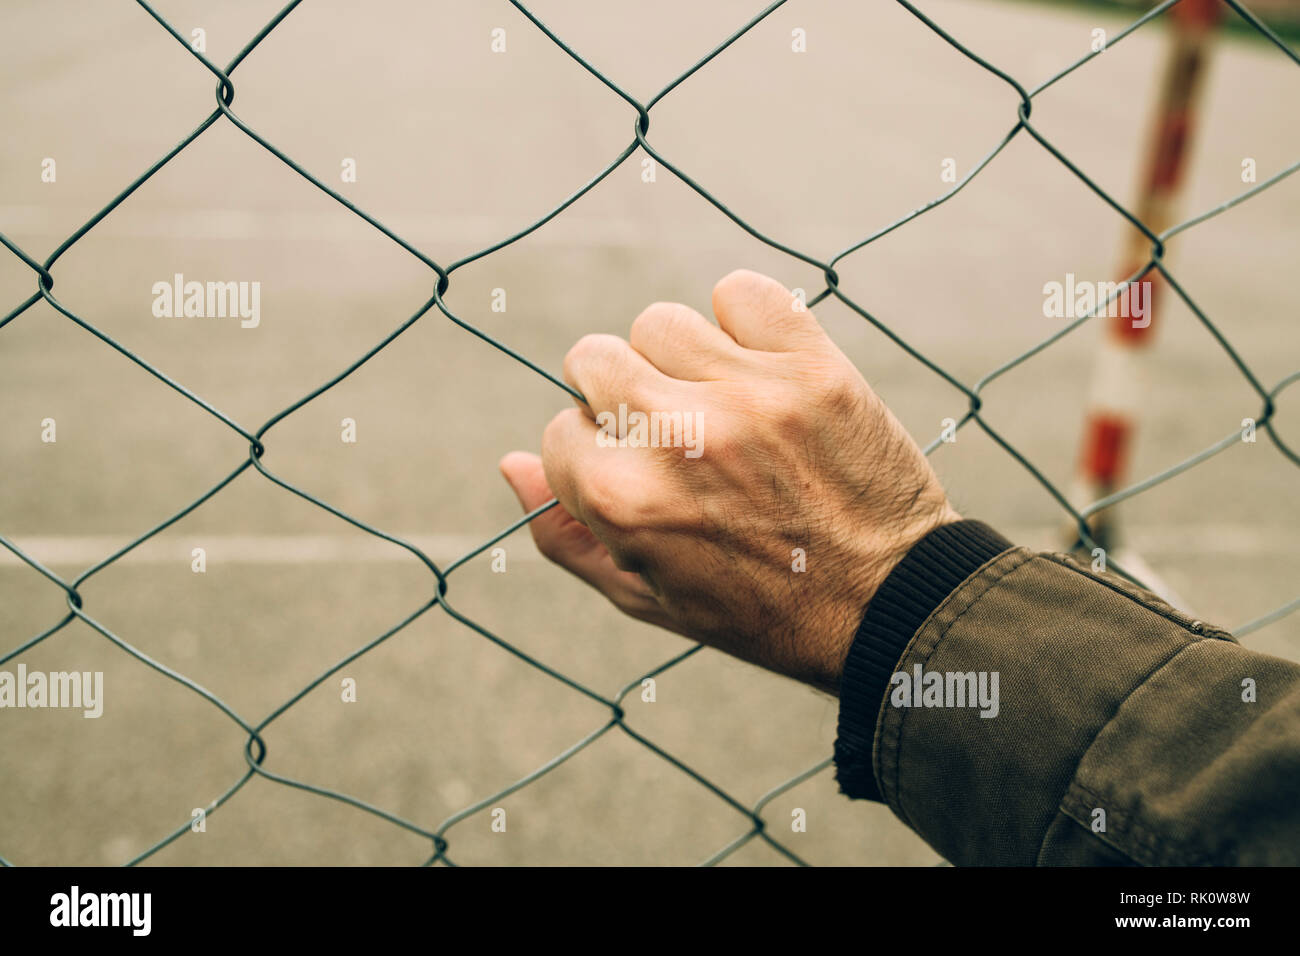 Männliche hand auf chainlink Fence, illegale Einwanderung Konzept Stockfoto